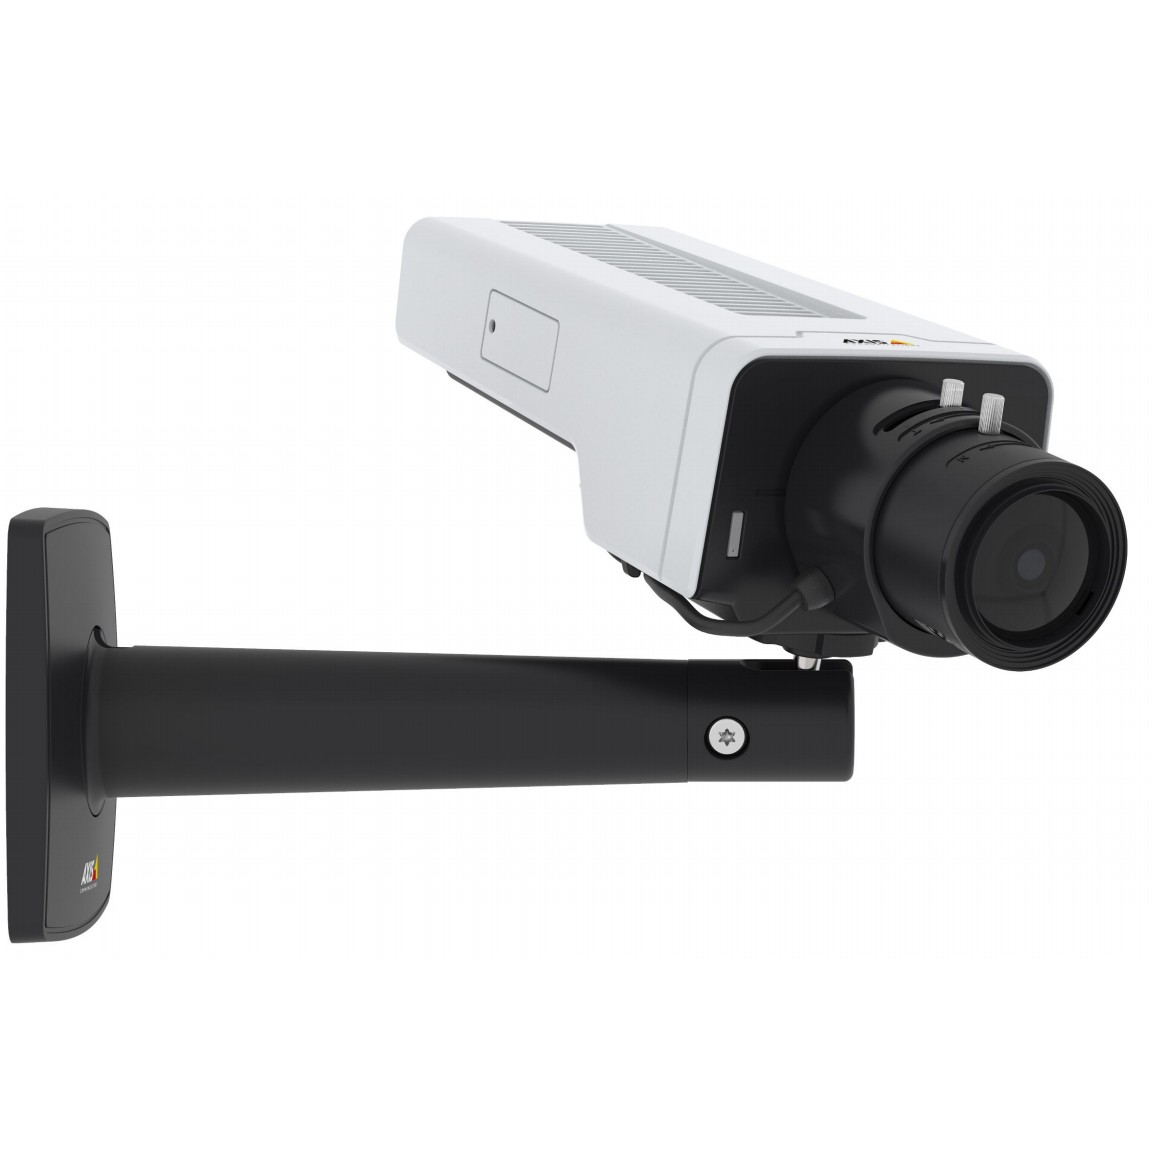 AXIS P1375 Network Camera - Netzwerk-Überwachungskamera - Farbe (Tag&Nacht) - 2 MP - 1920 x 1080 - 1